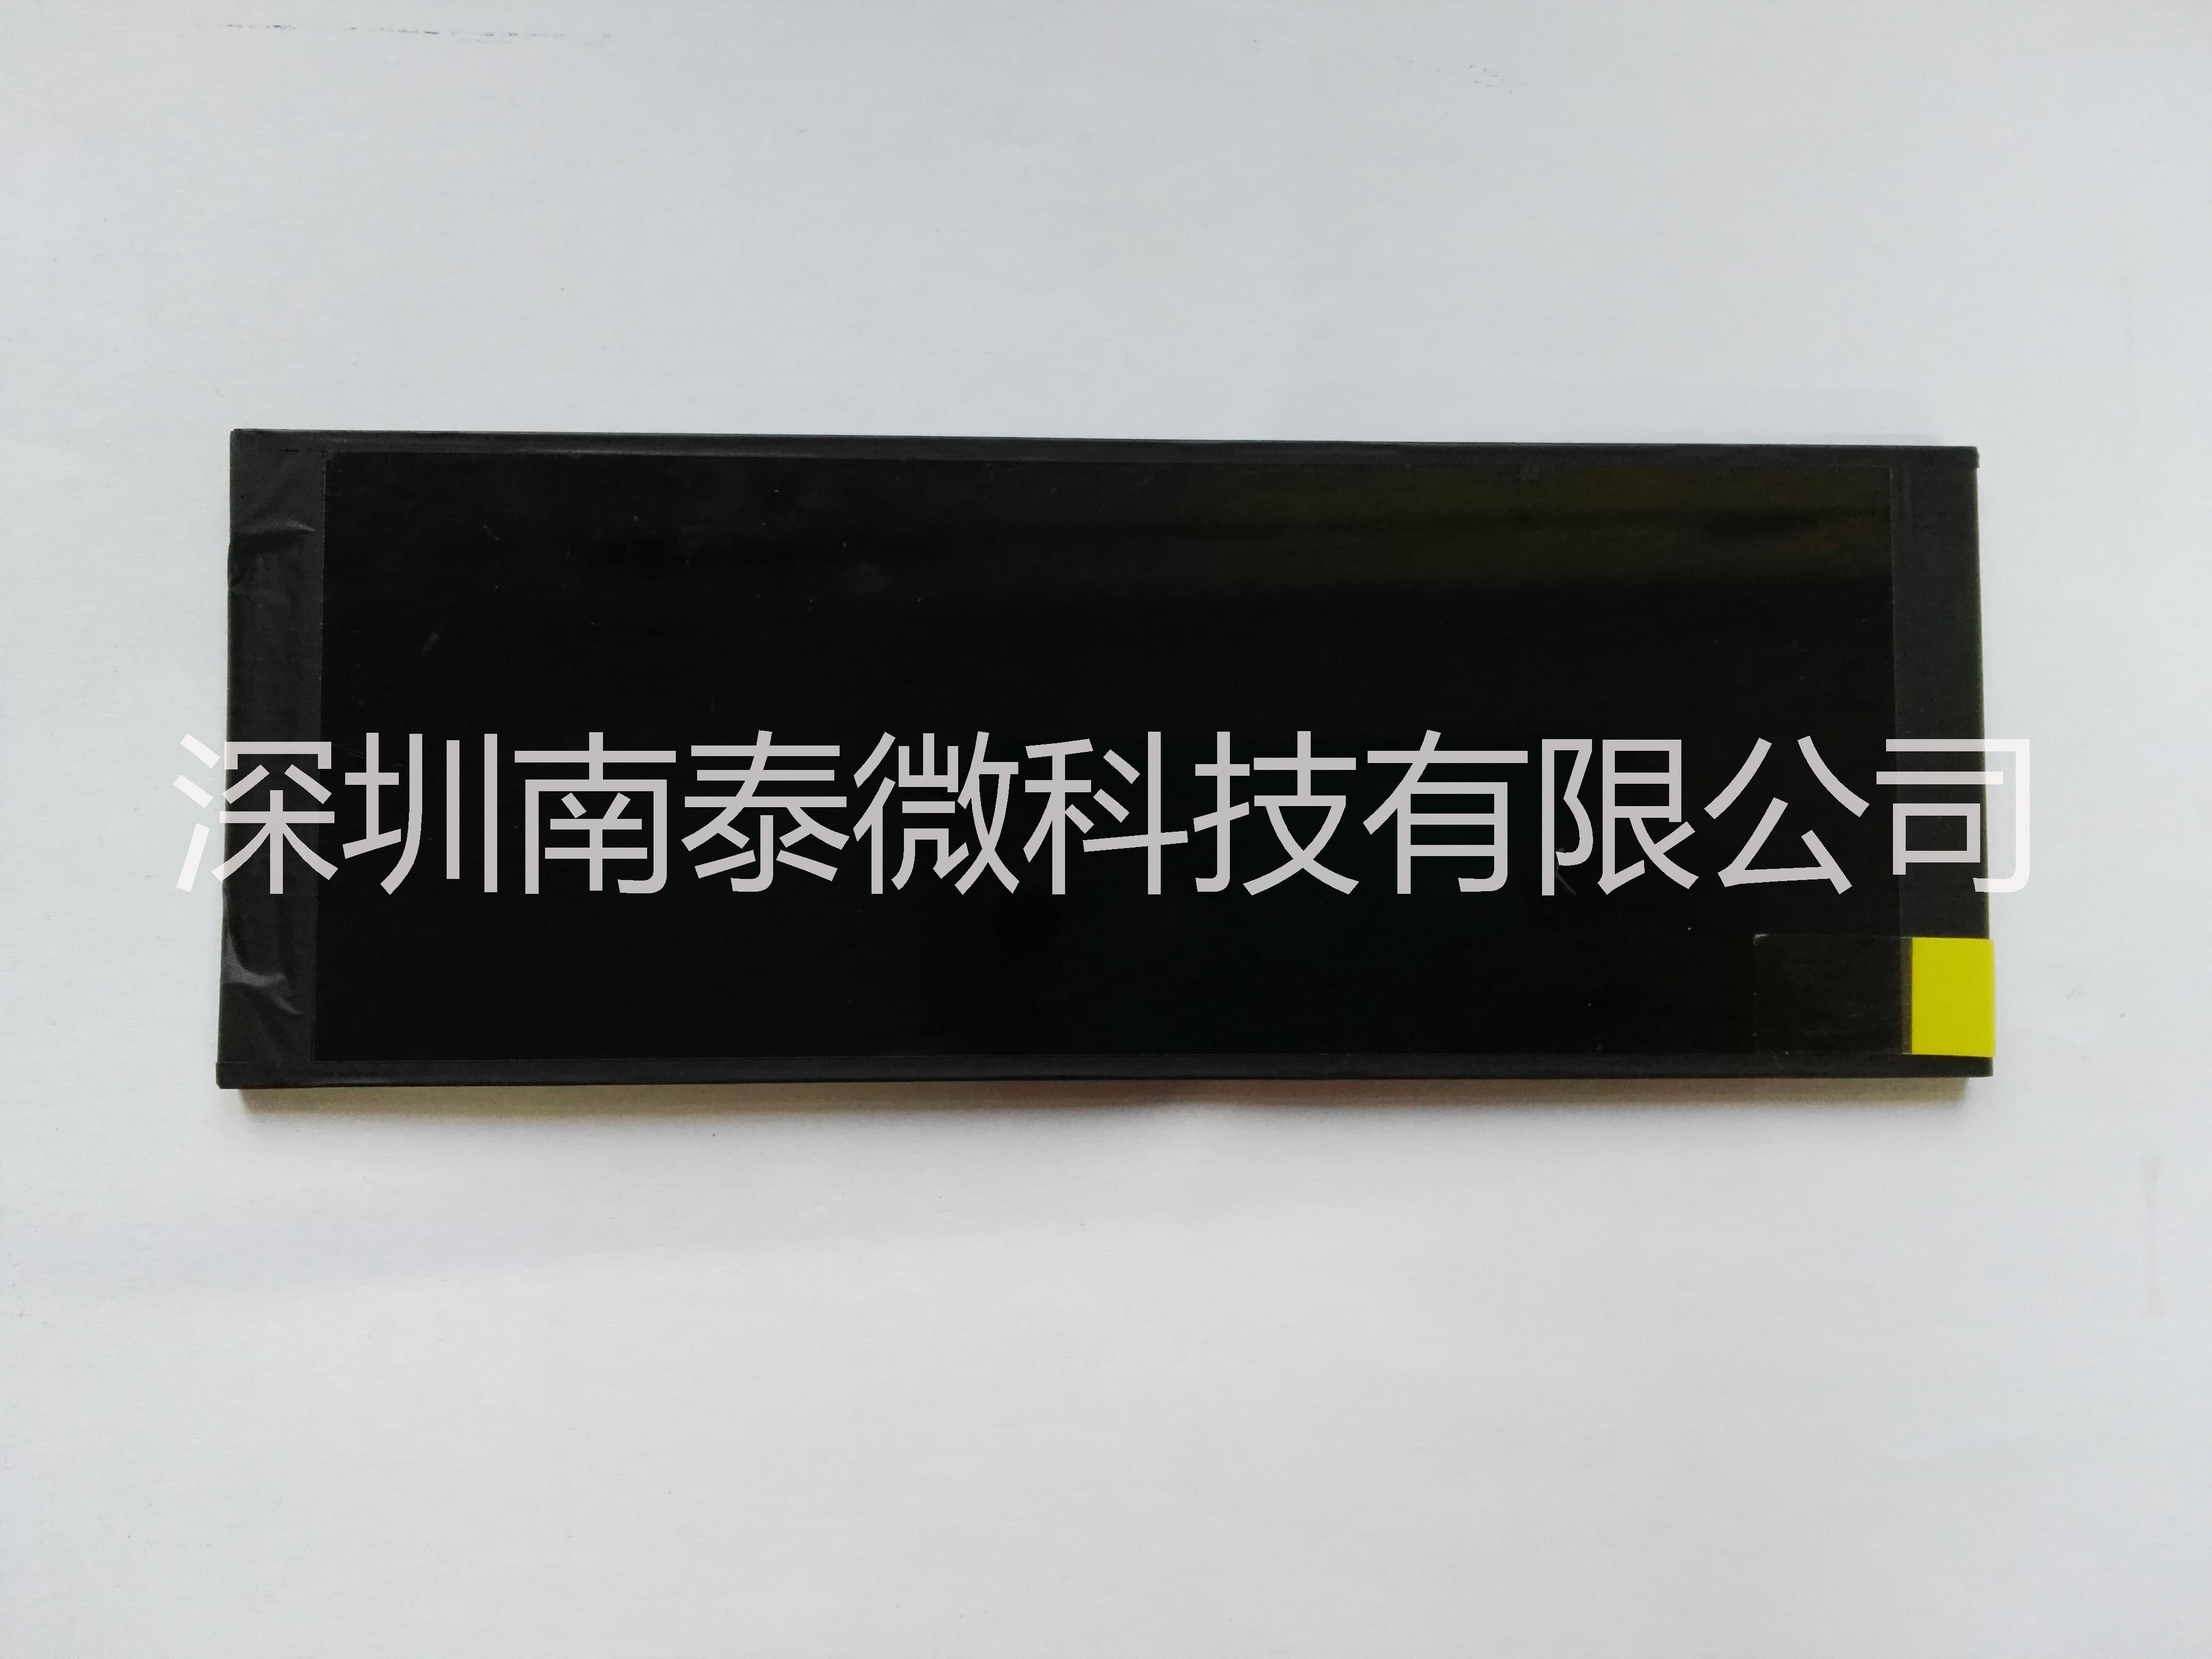 深圳6.86寸IPS全视角液晶屏用于智能后视镜 行车记录仪